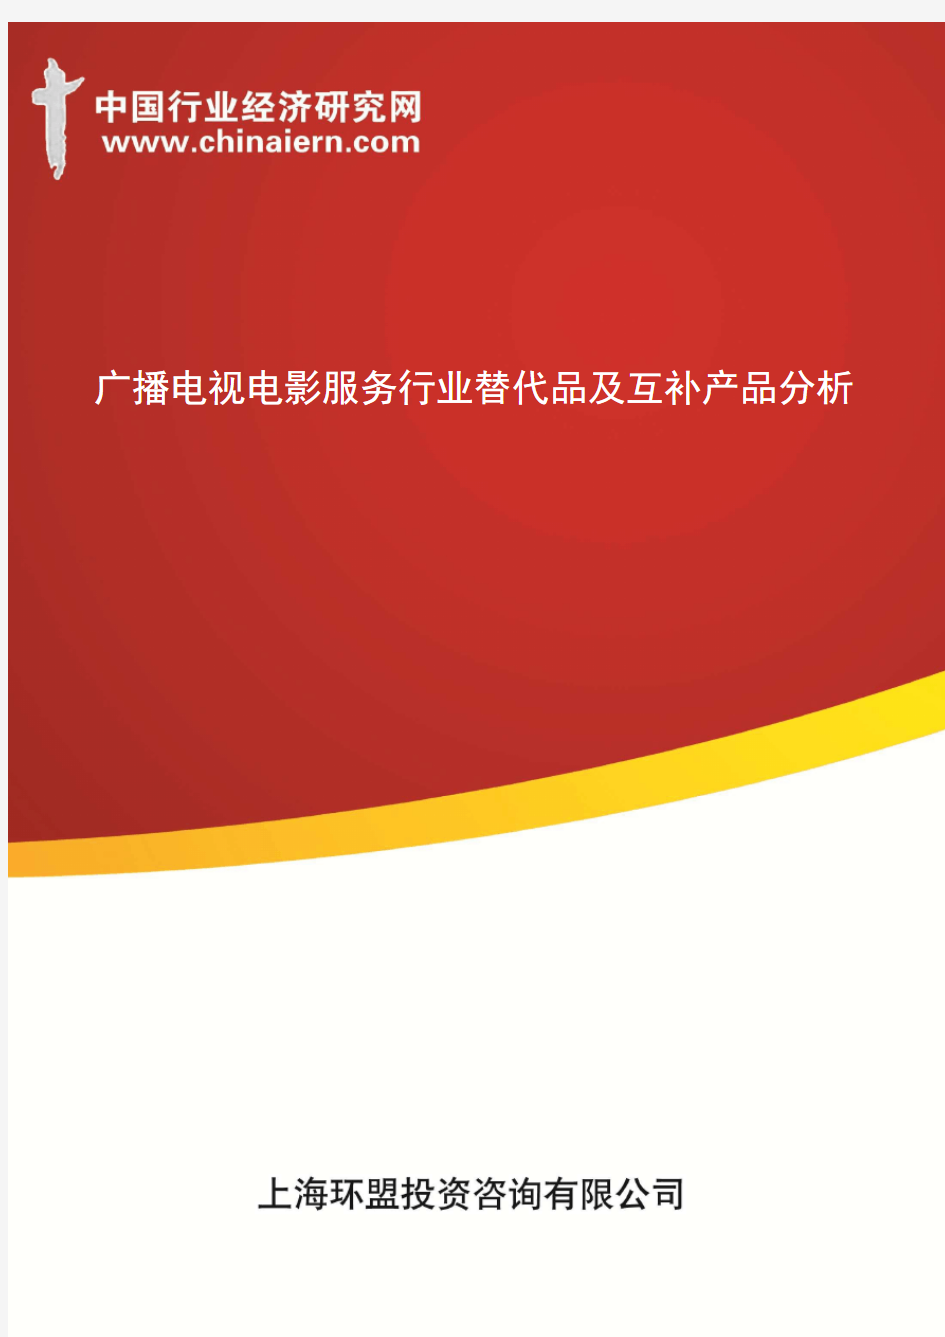 (上海环盟咨询)广播电视电影服务行业替代品及互补产品分析